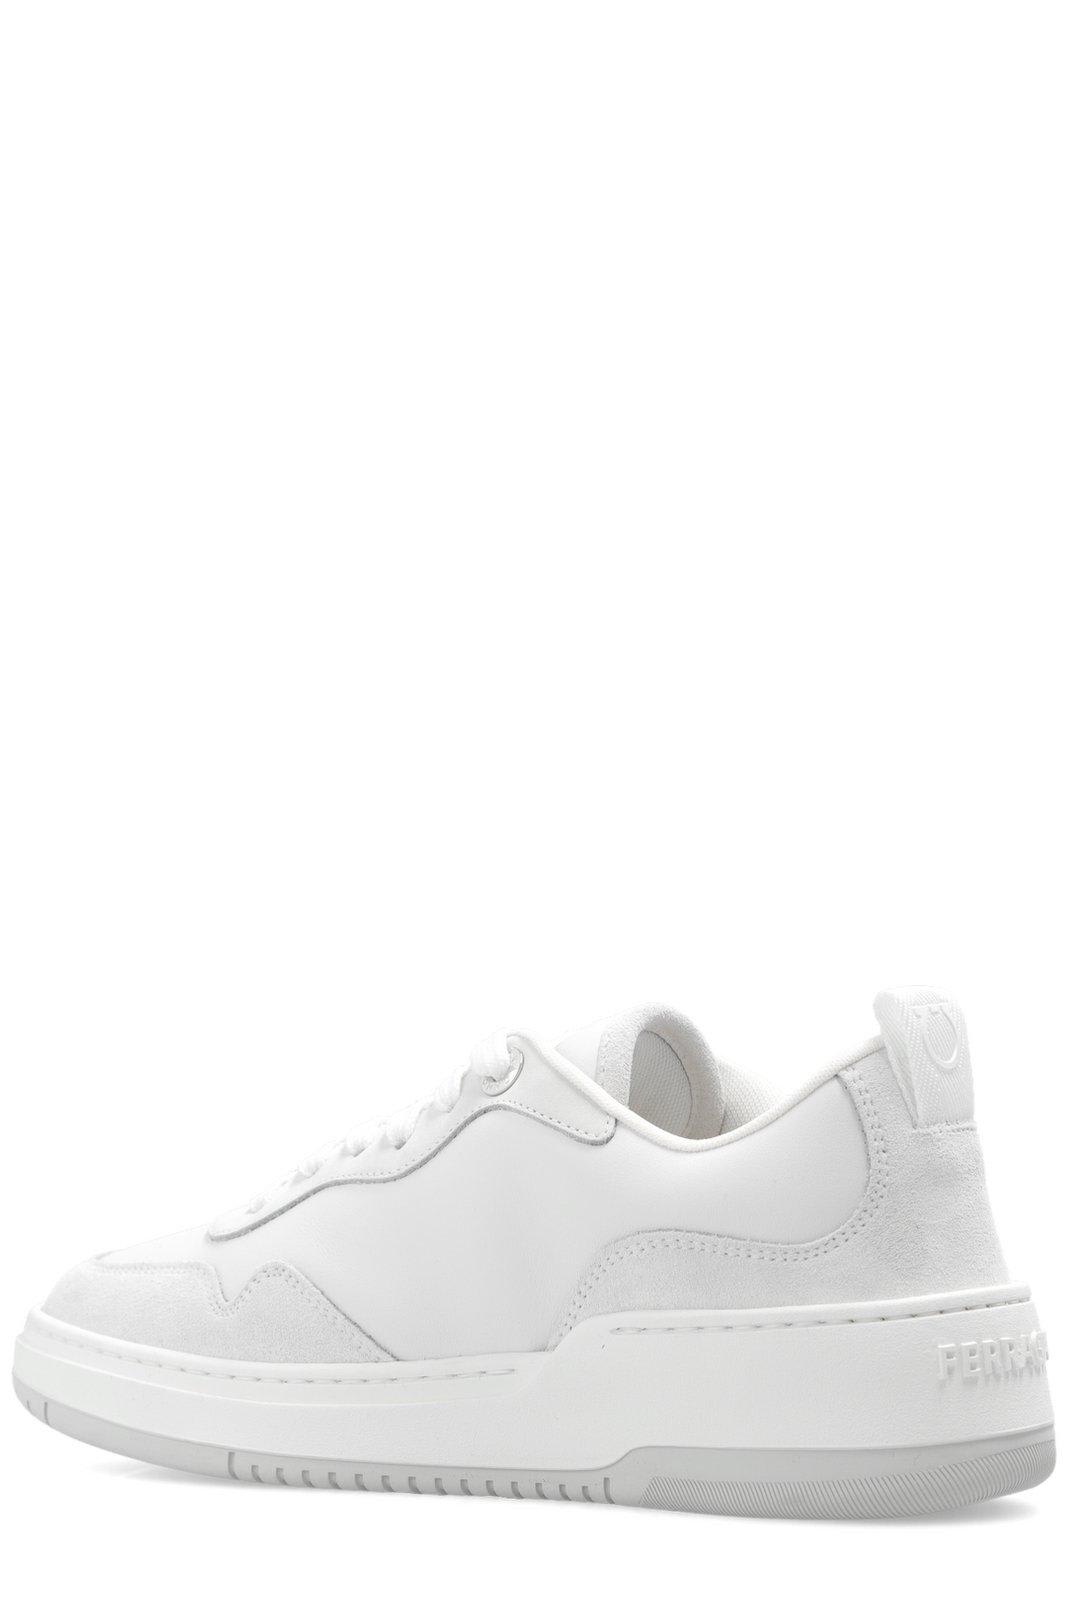 Shop Ferragamo Gancini Low-top Sneakers In White